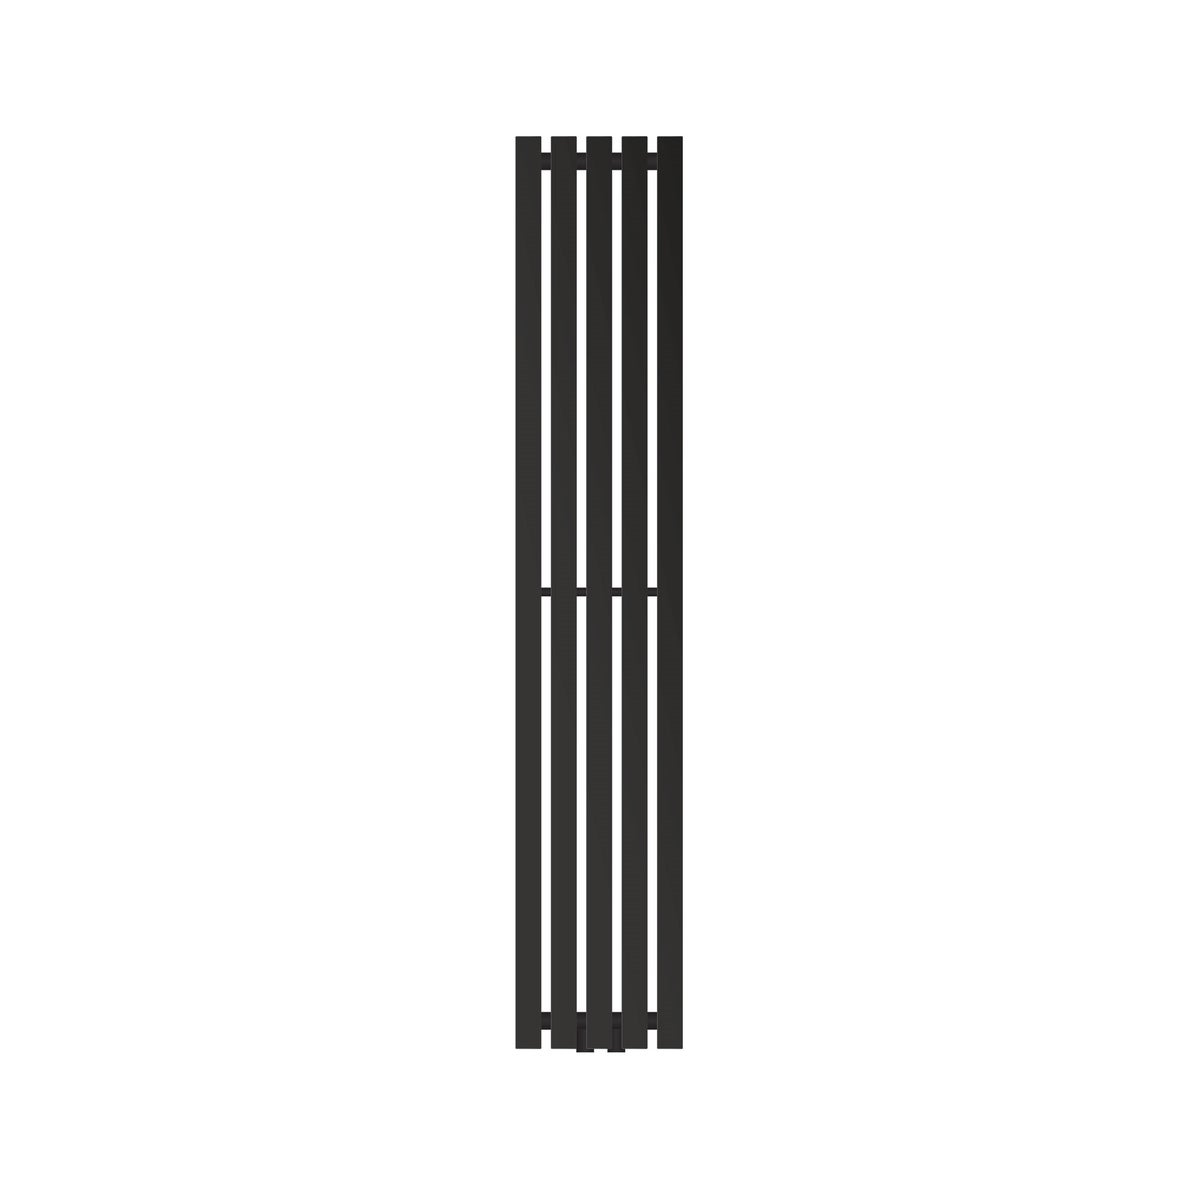 LuxeBath Designheizkörper Stella 1400 x 260 mm, Schwarz matt, Paneelheizkörper mit Mittelanschluss, Einlagig, Flach, Vertikal, Badheizkörper Röhrenheizkörper Bad Flachheizkörper Badezimmer Wandheizung